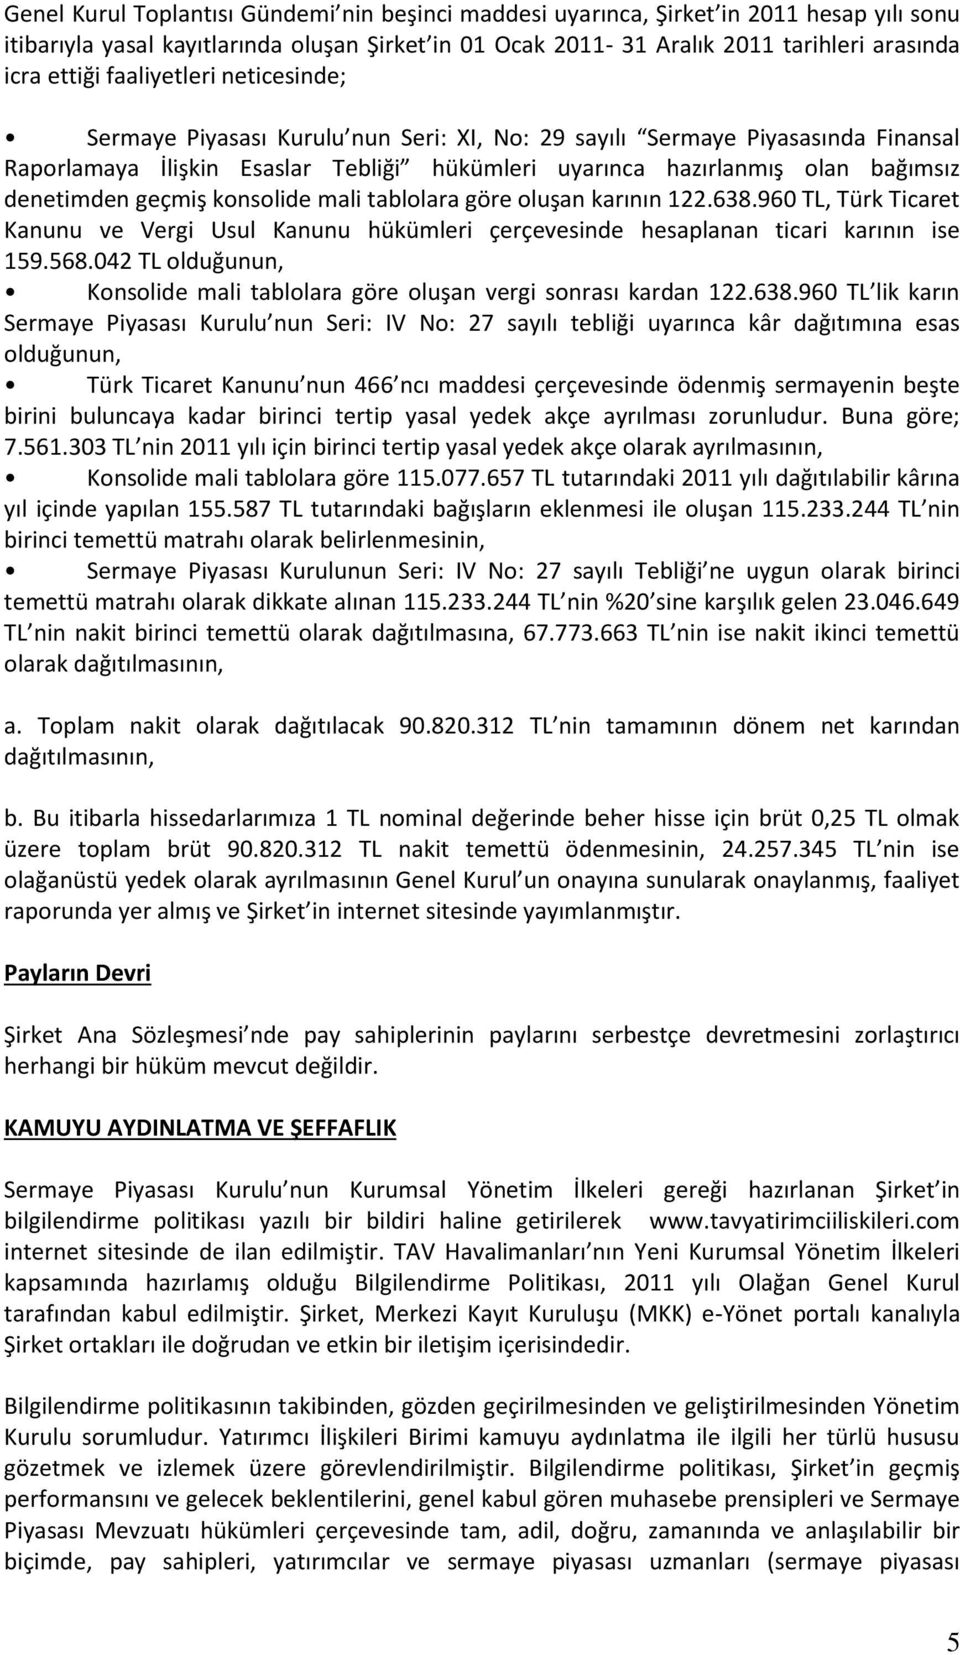 geçmiş konsolide mali tablolara göre oluşan karının 122.638.960 TL, Türk Ticaret Kanunu ve Vergi Usul Kanunu hükümleri çerçevesinde hesaplanan ticari karının ise 159.568.